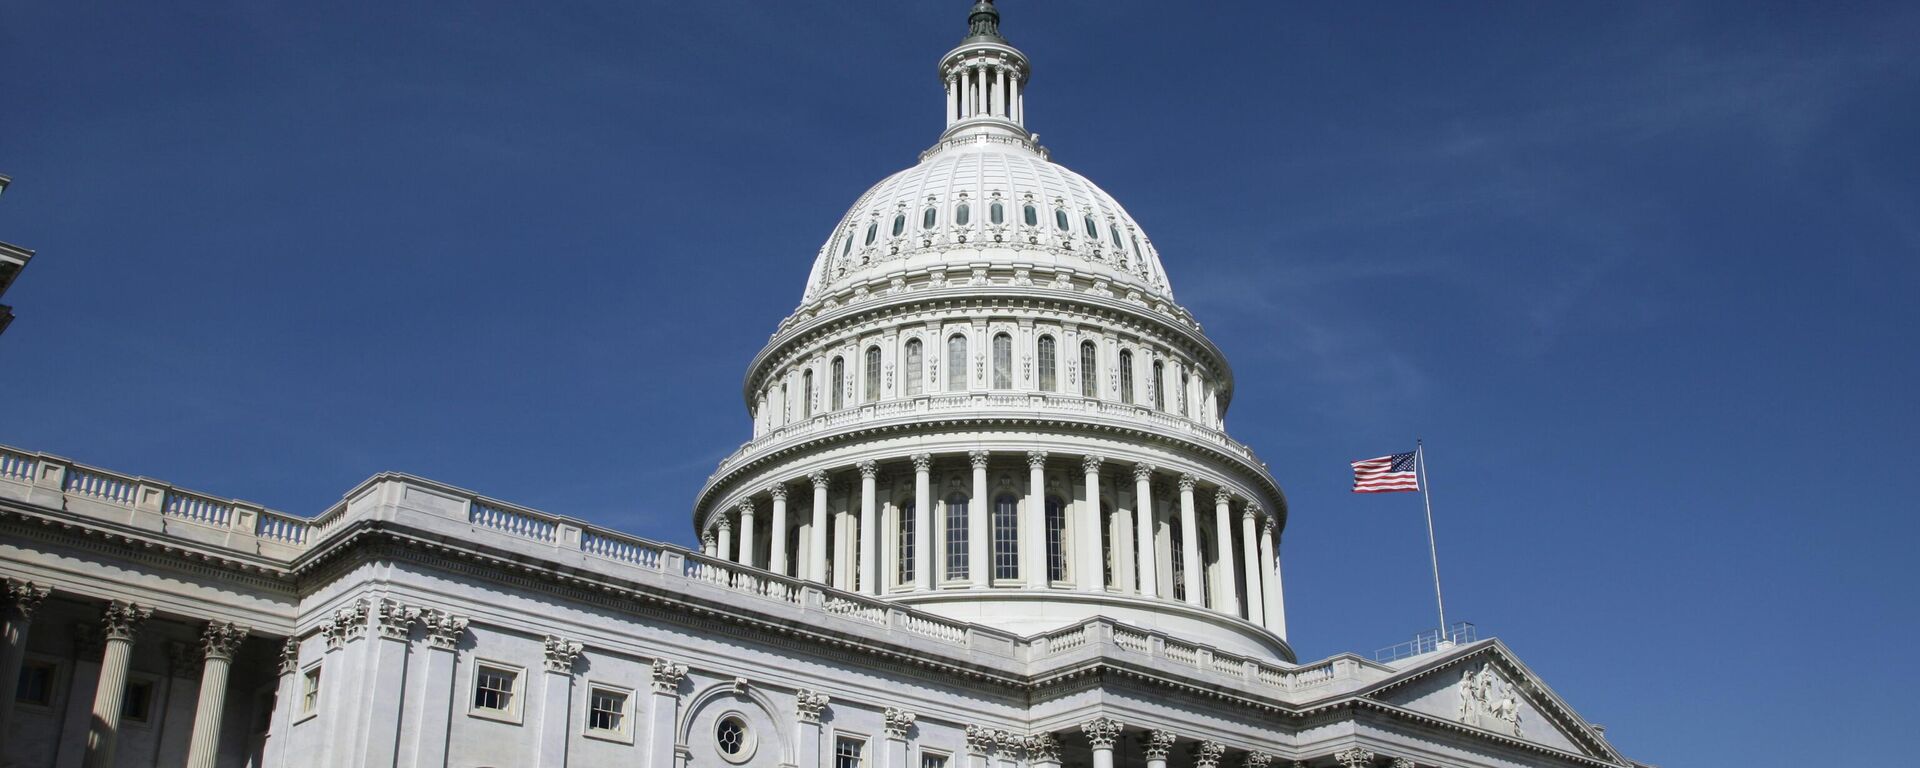 Купол Капитолия - здание конгресса США в Вашингтоне.  - Sputnik Грузия, 1920, 27.09.2022